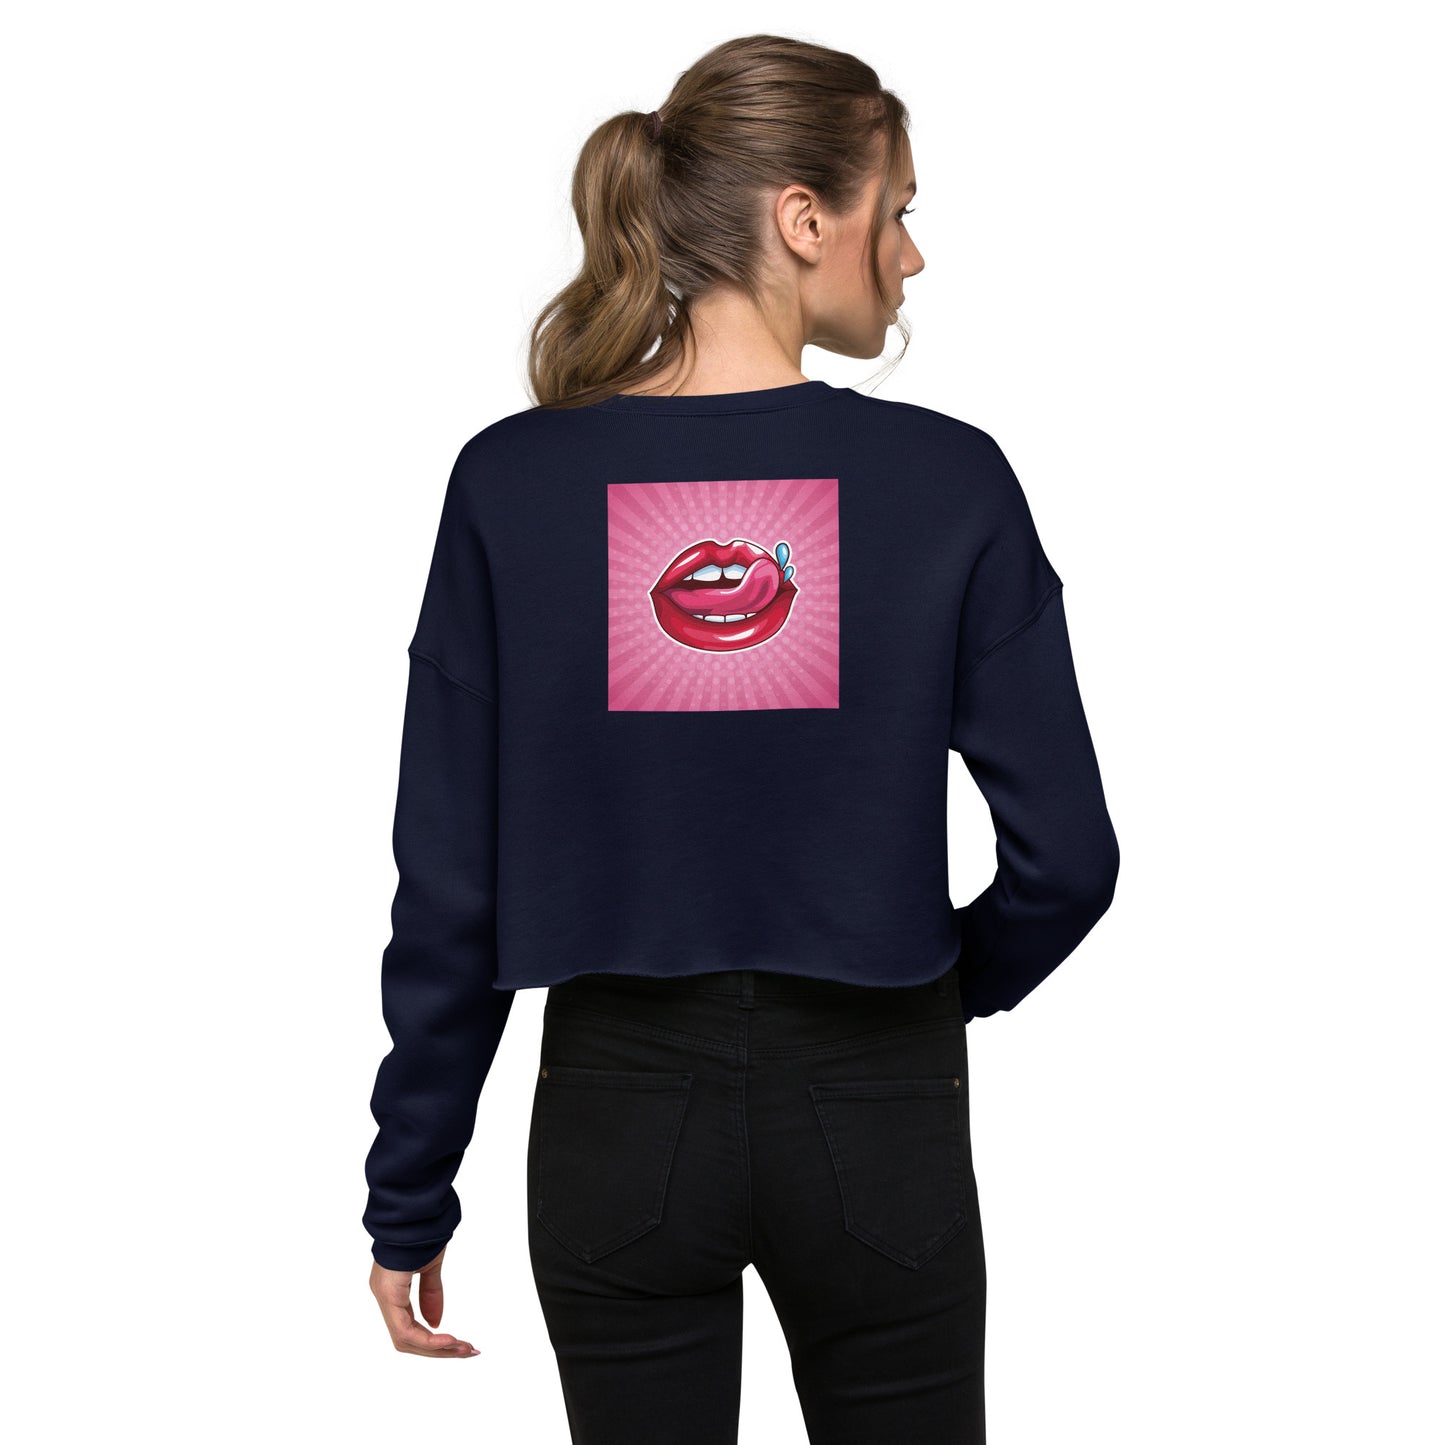 Crop Sweatshirt with Lips design (sourced Vecteezy.com)